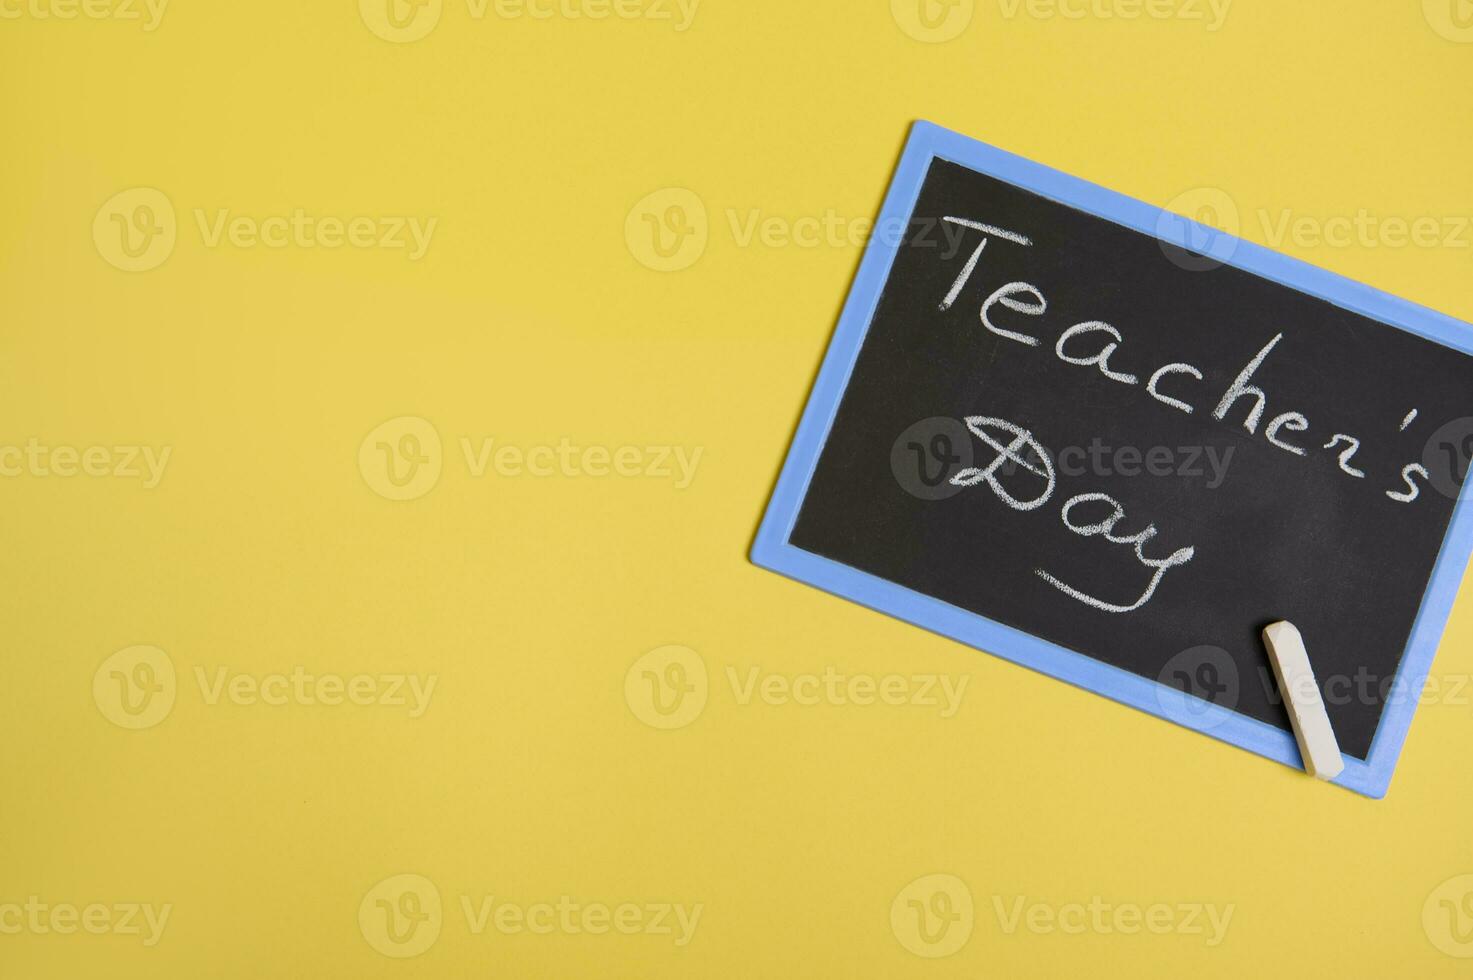 plano deitar do uma tabuleiro de giz com inscrição professores dia em uma amarelo fundo com cópia de espaço para texto foto